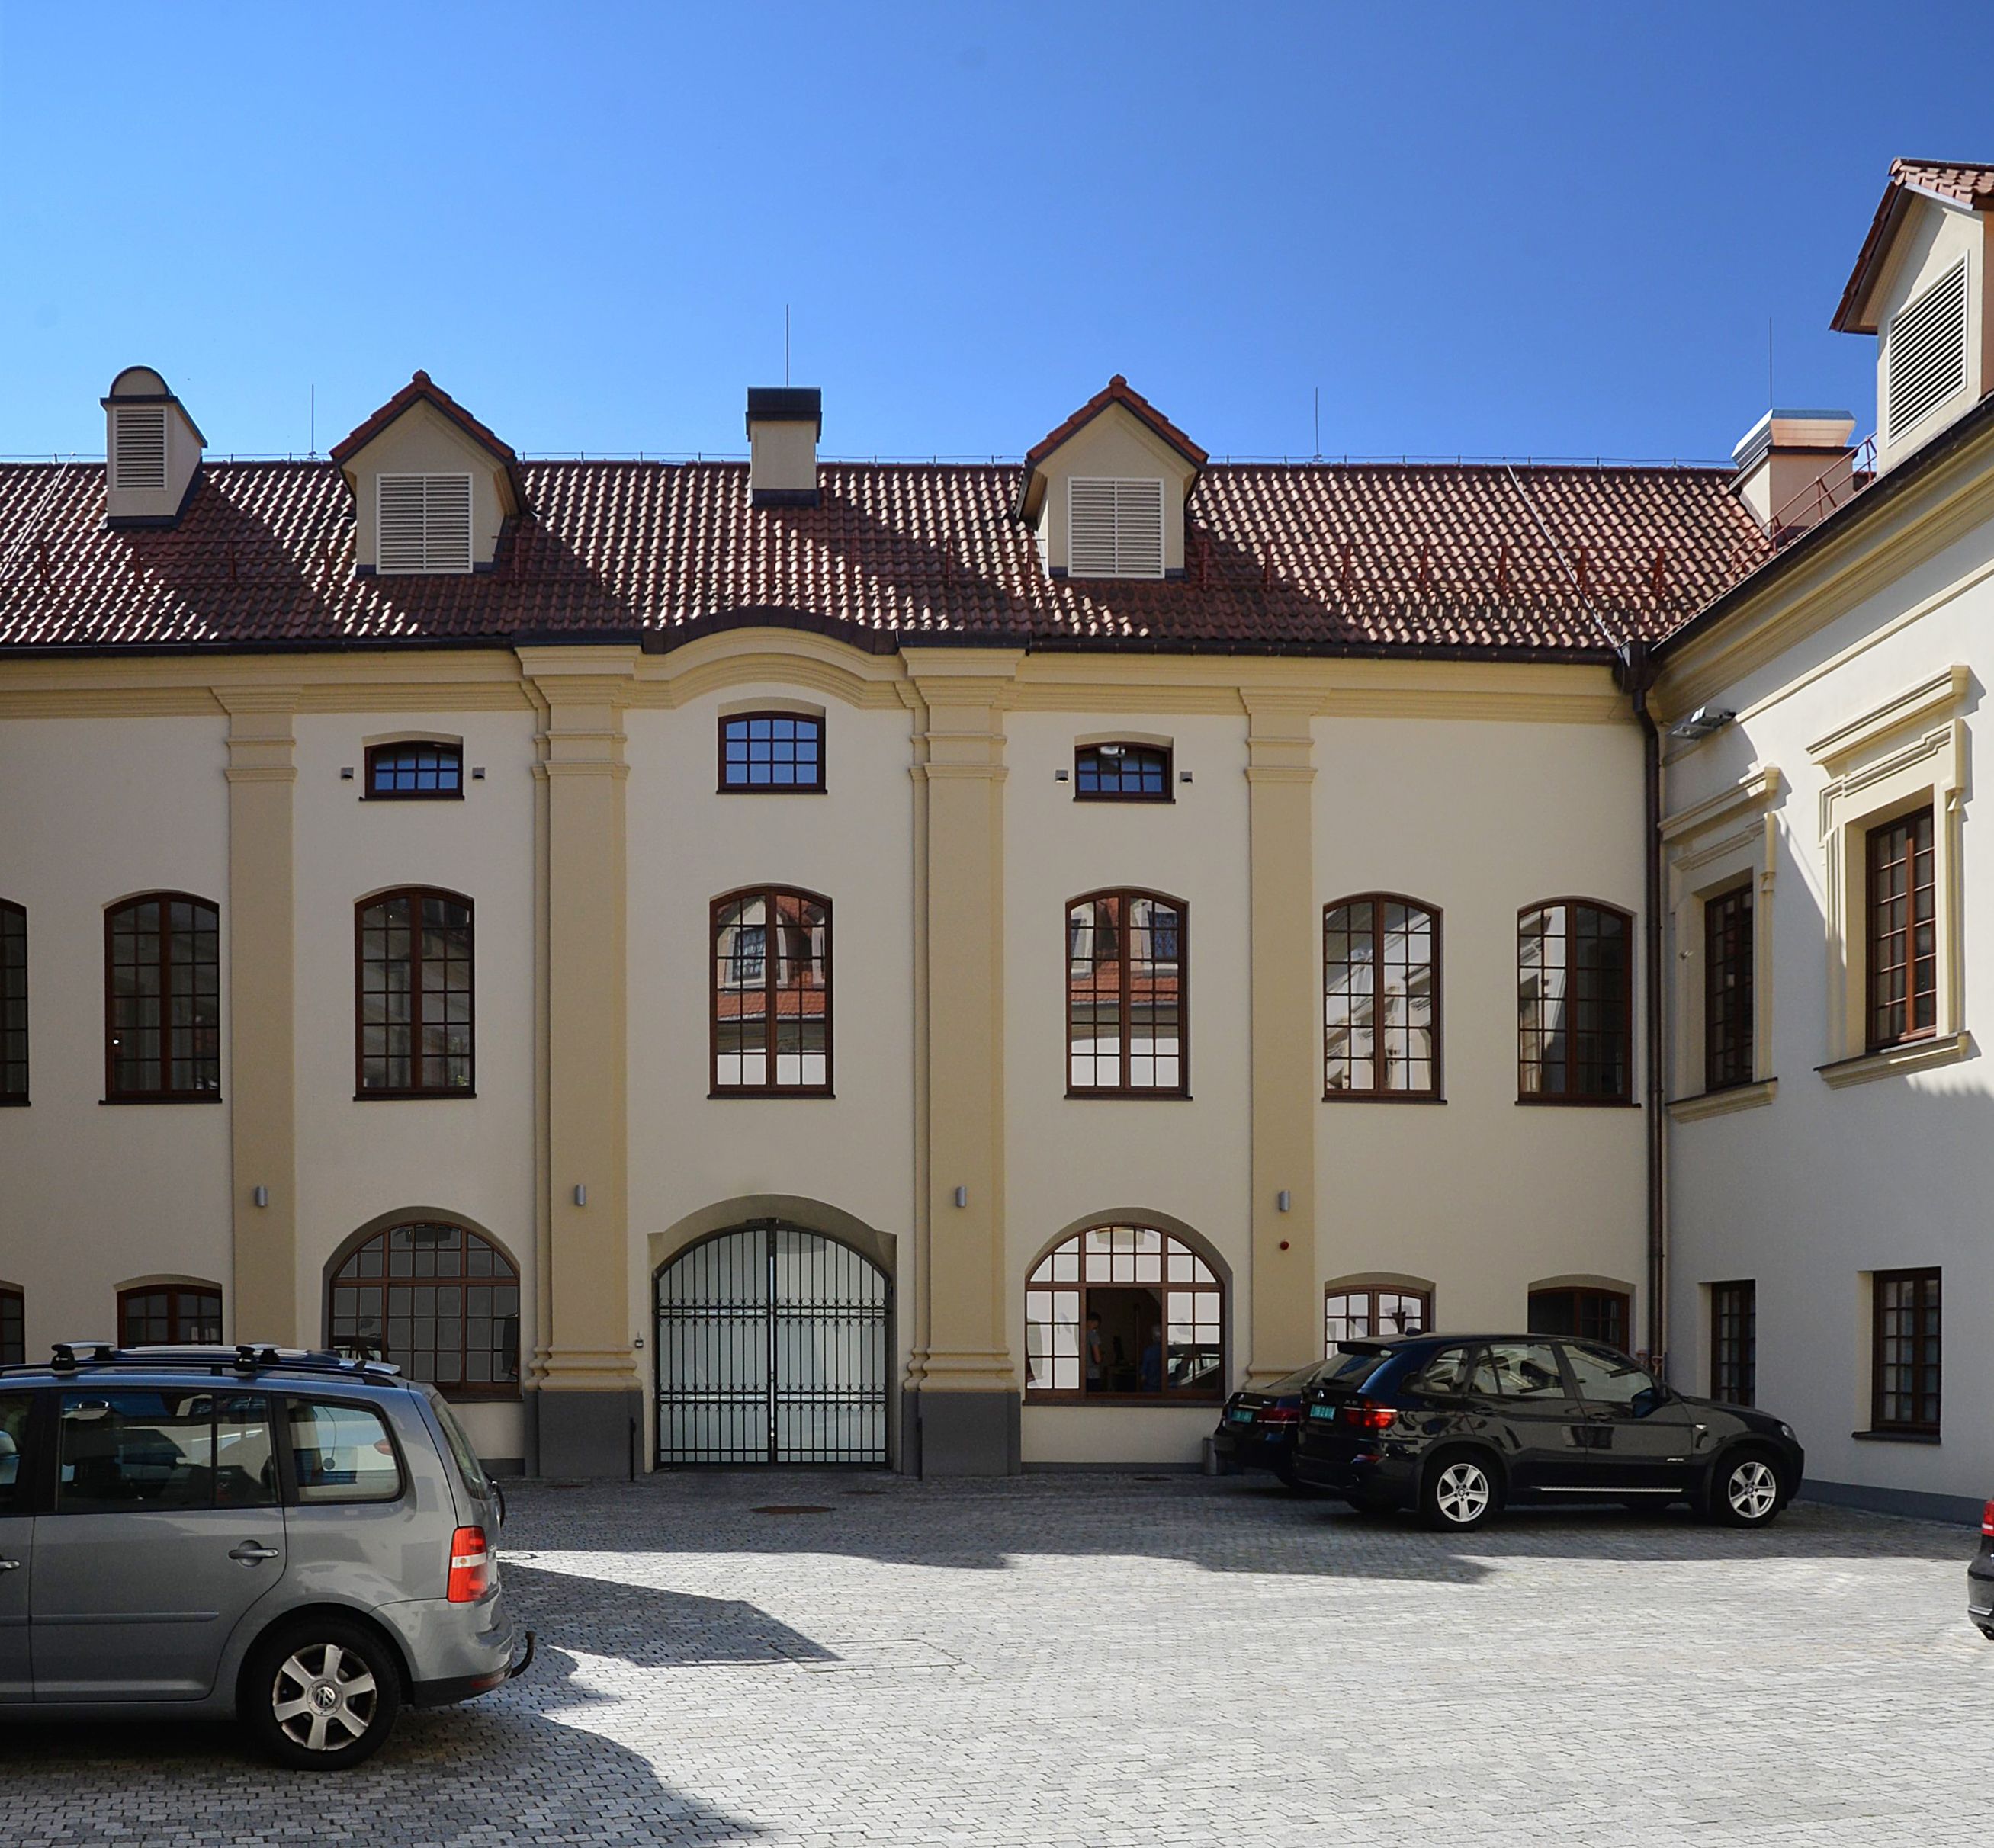 Pacas Chancellor's Palace in Vilnius